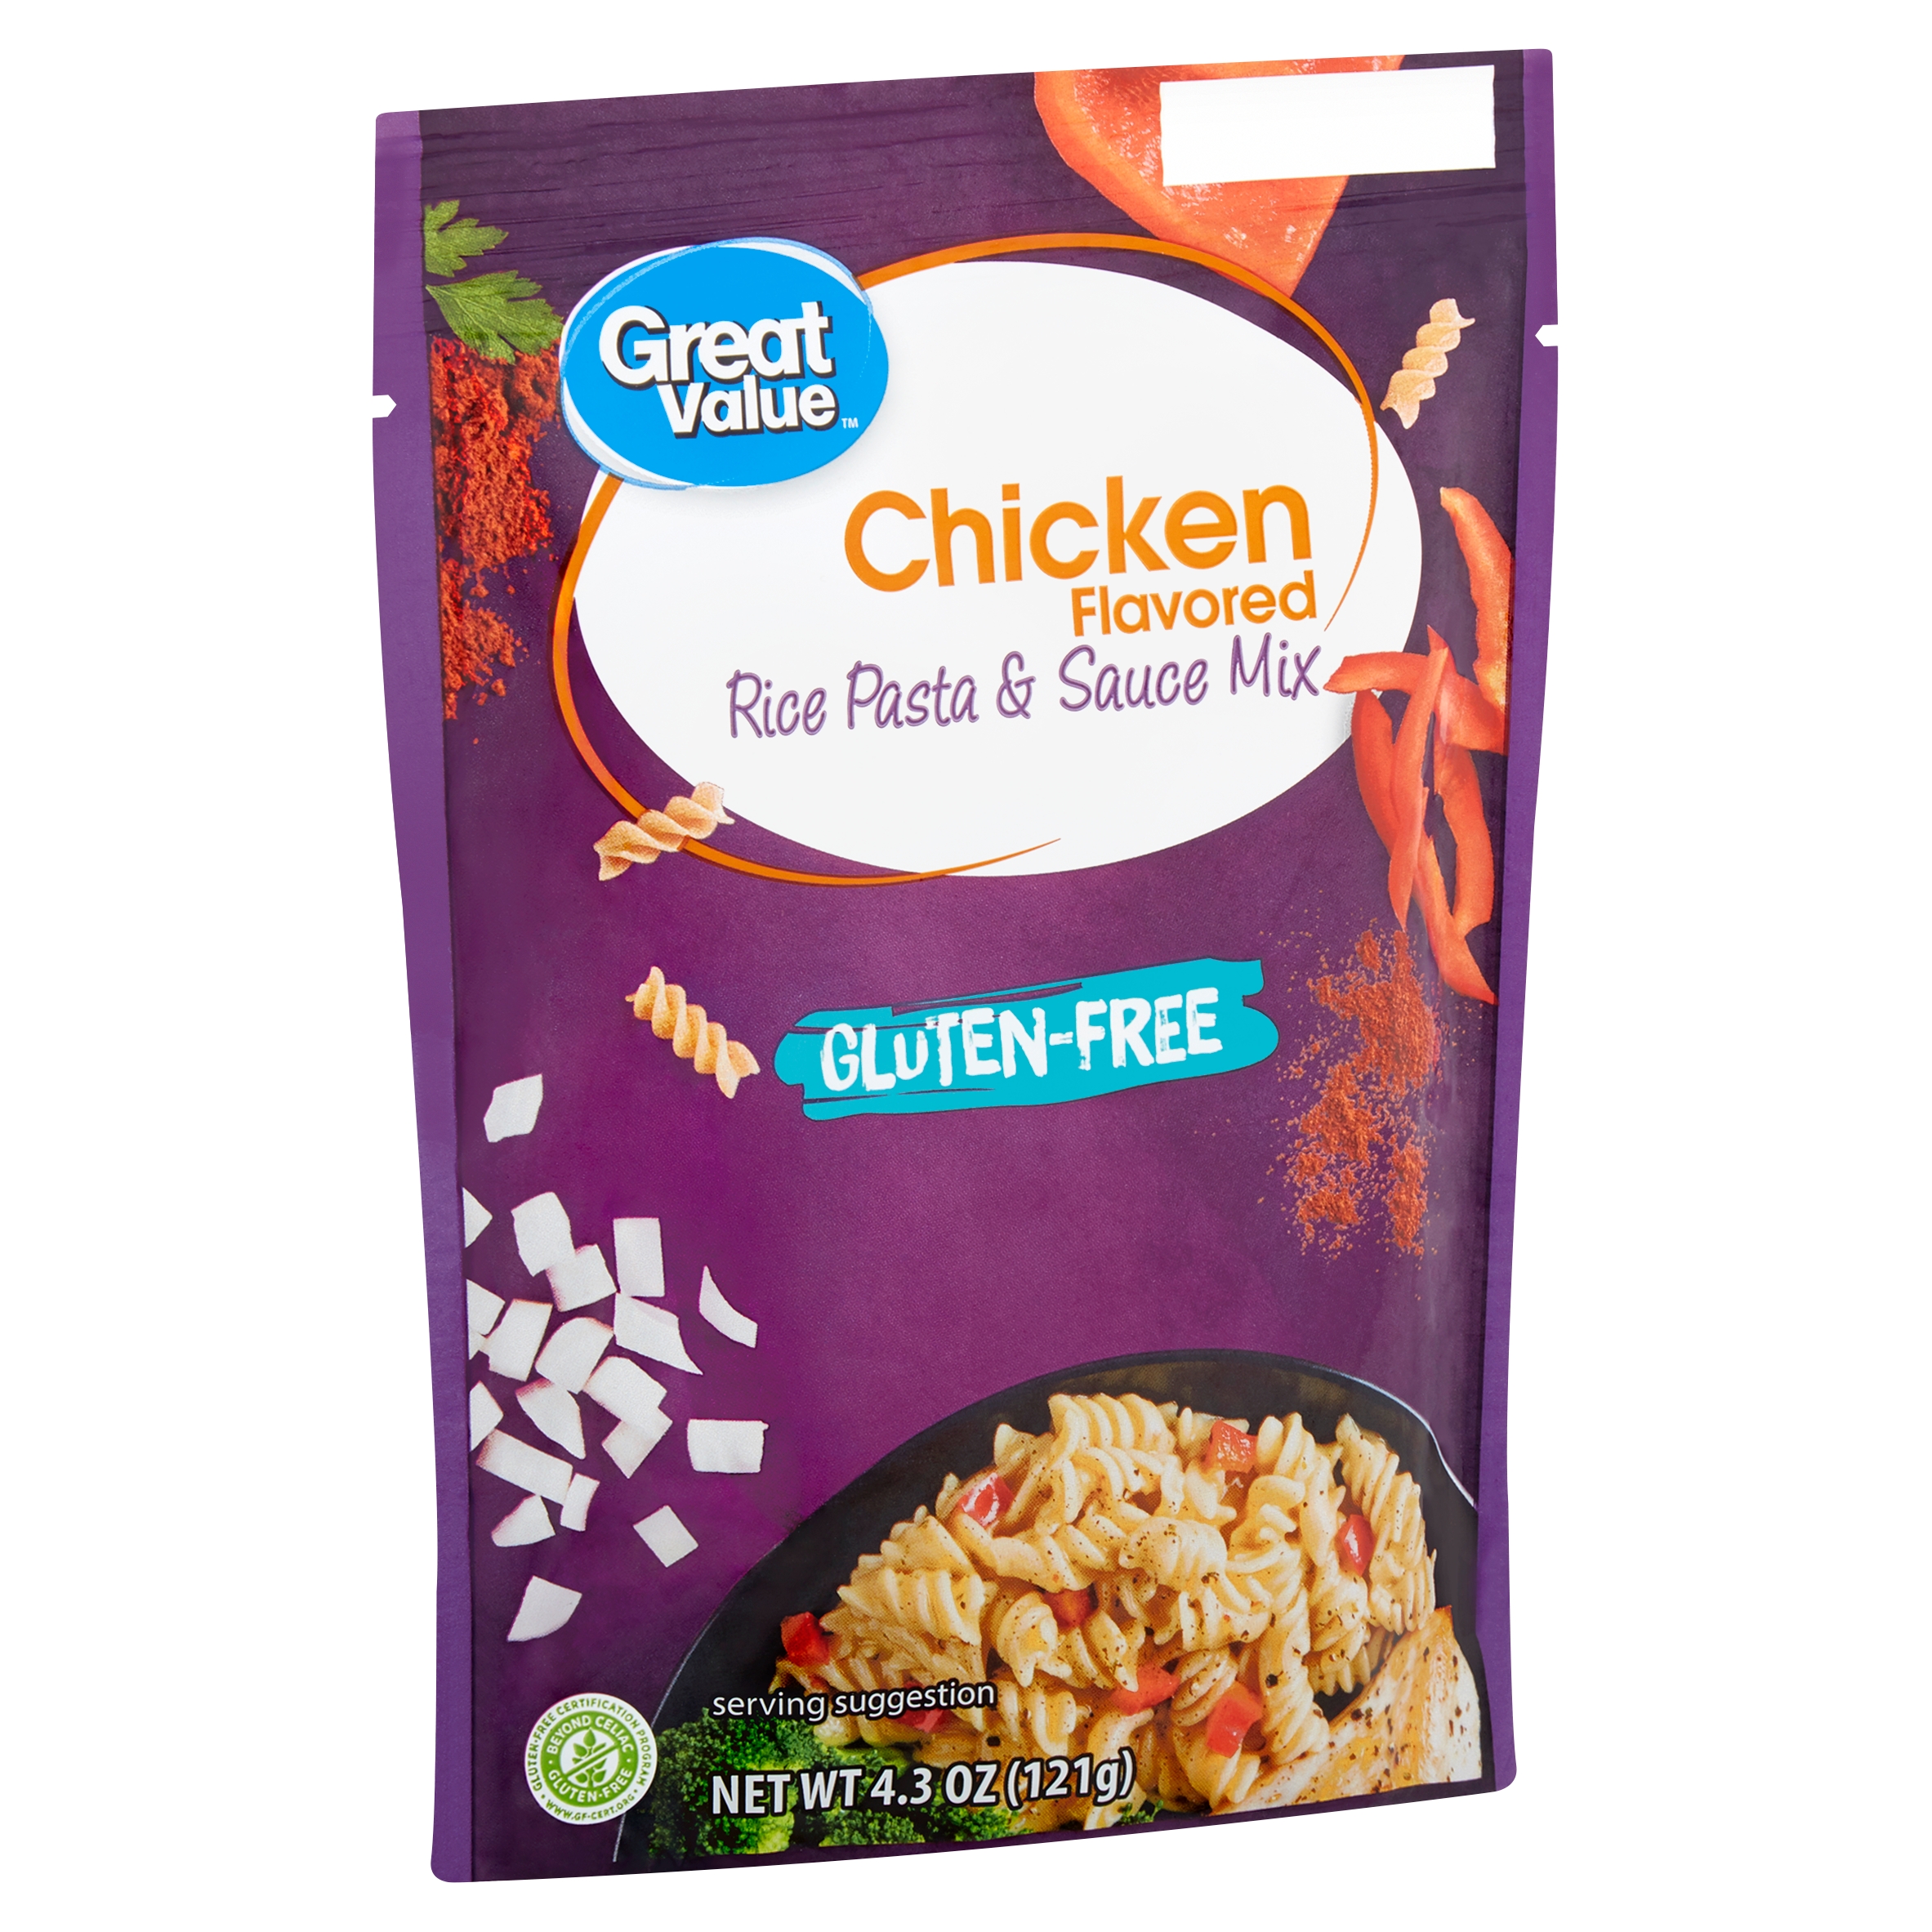 Great Value Gluten-Free Chicken Flavored Rice Pasta & Sauce Mix, 4.3 Oz